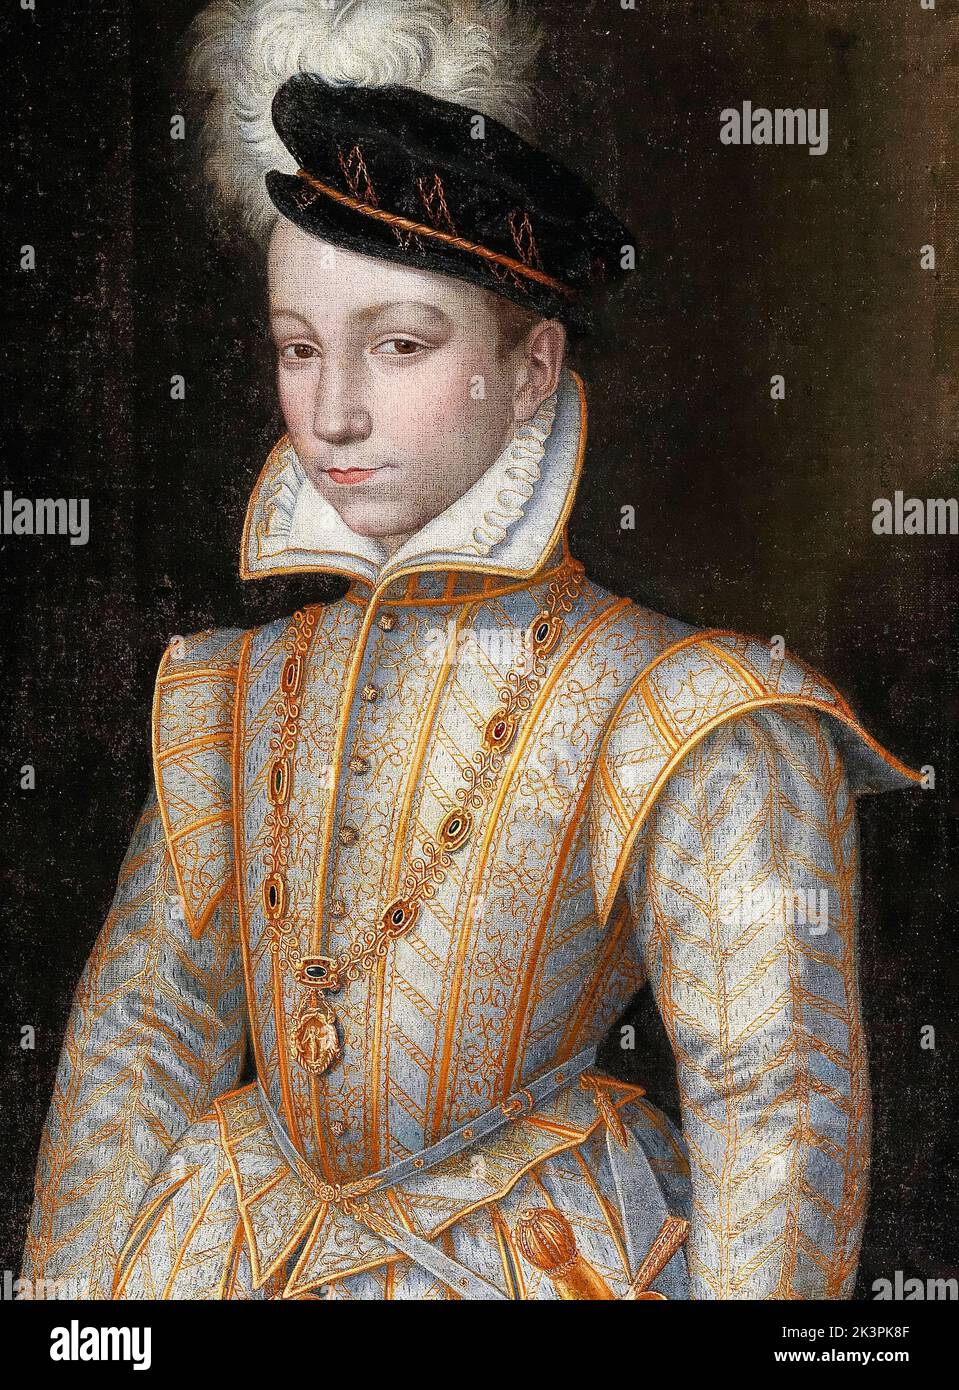 Carlos IX (1550-1574), Rey de Francia (1560-1574), retrato al óleo sobre lienzo de un artista de la Escuela Francesa, alrededor de 1560 Foto de stock